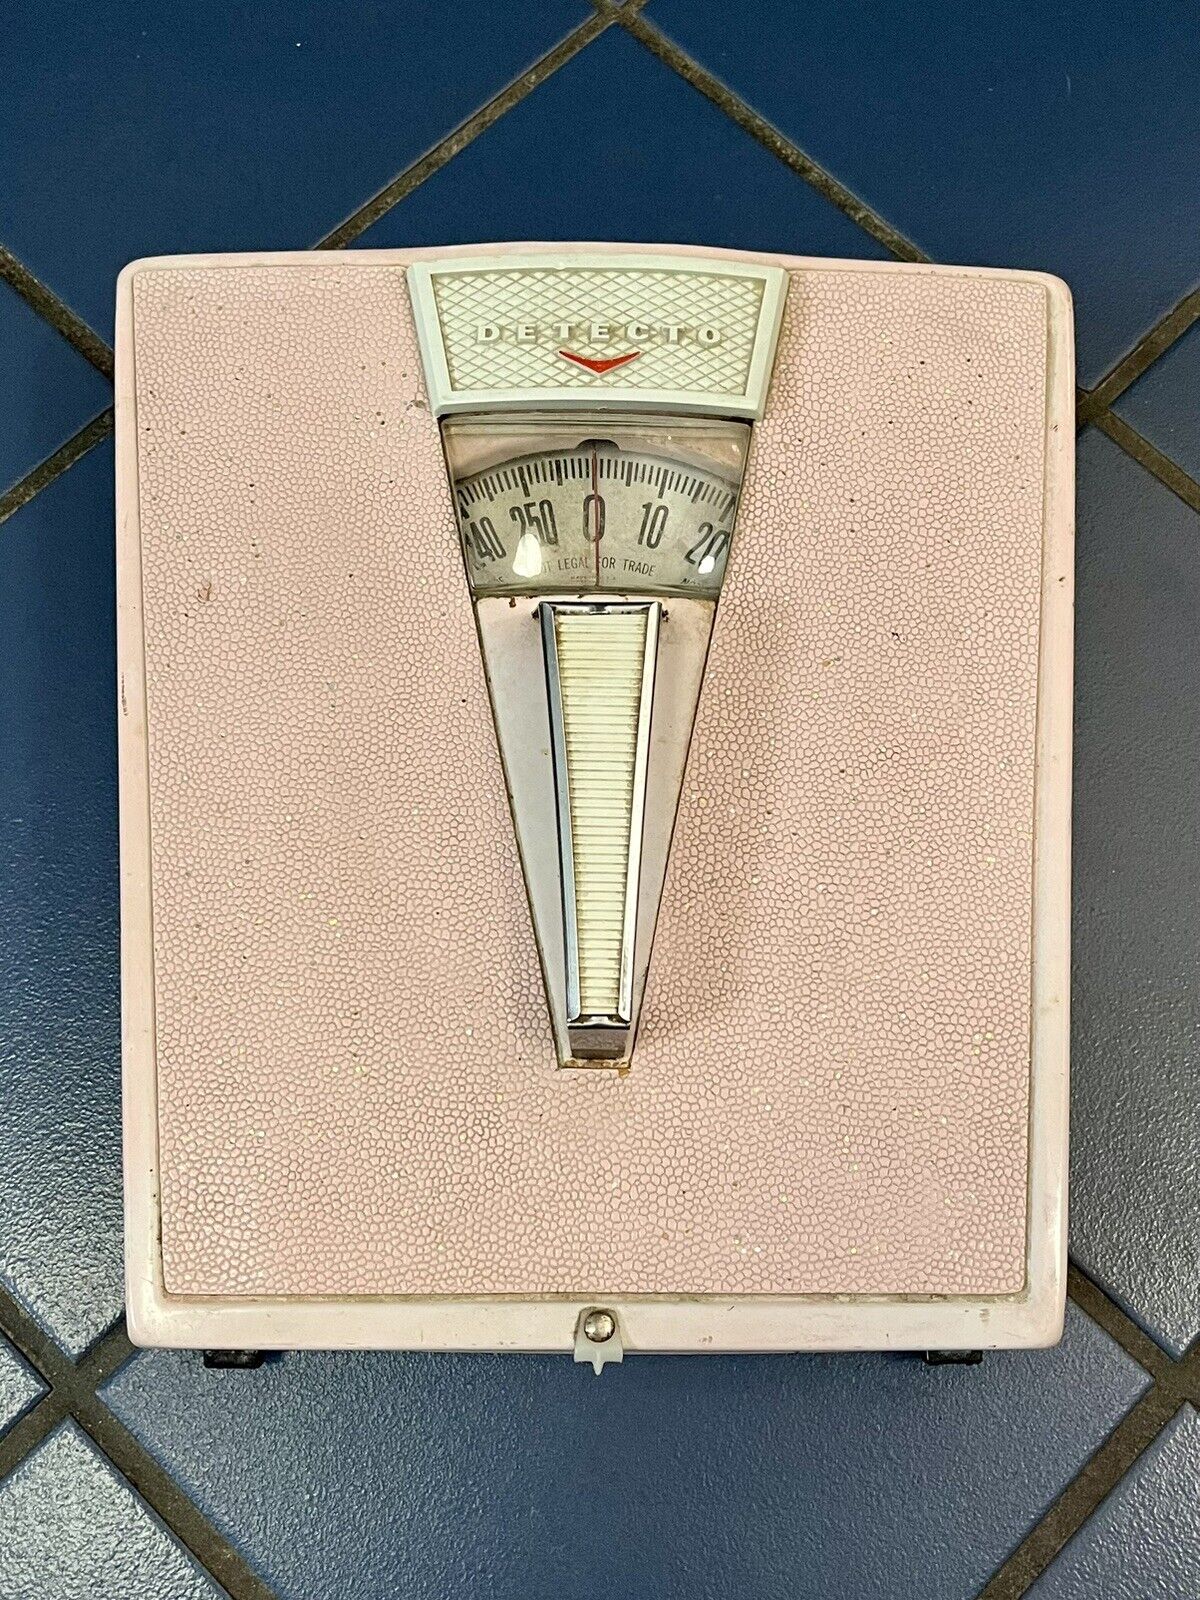 RARE 1950’s Vintage/Retro Detecto MCM Bathroom Scale - Pink With Silver Speckles